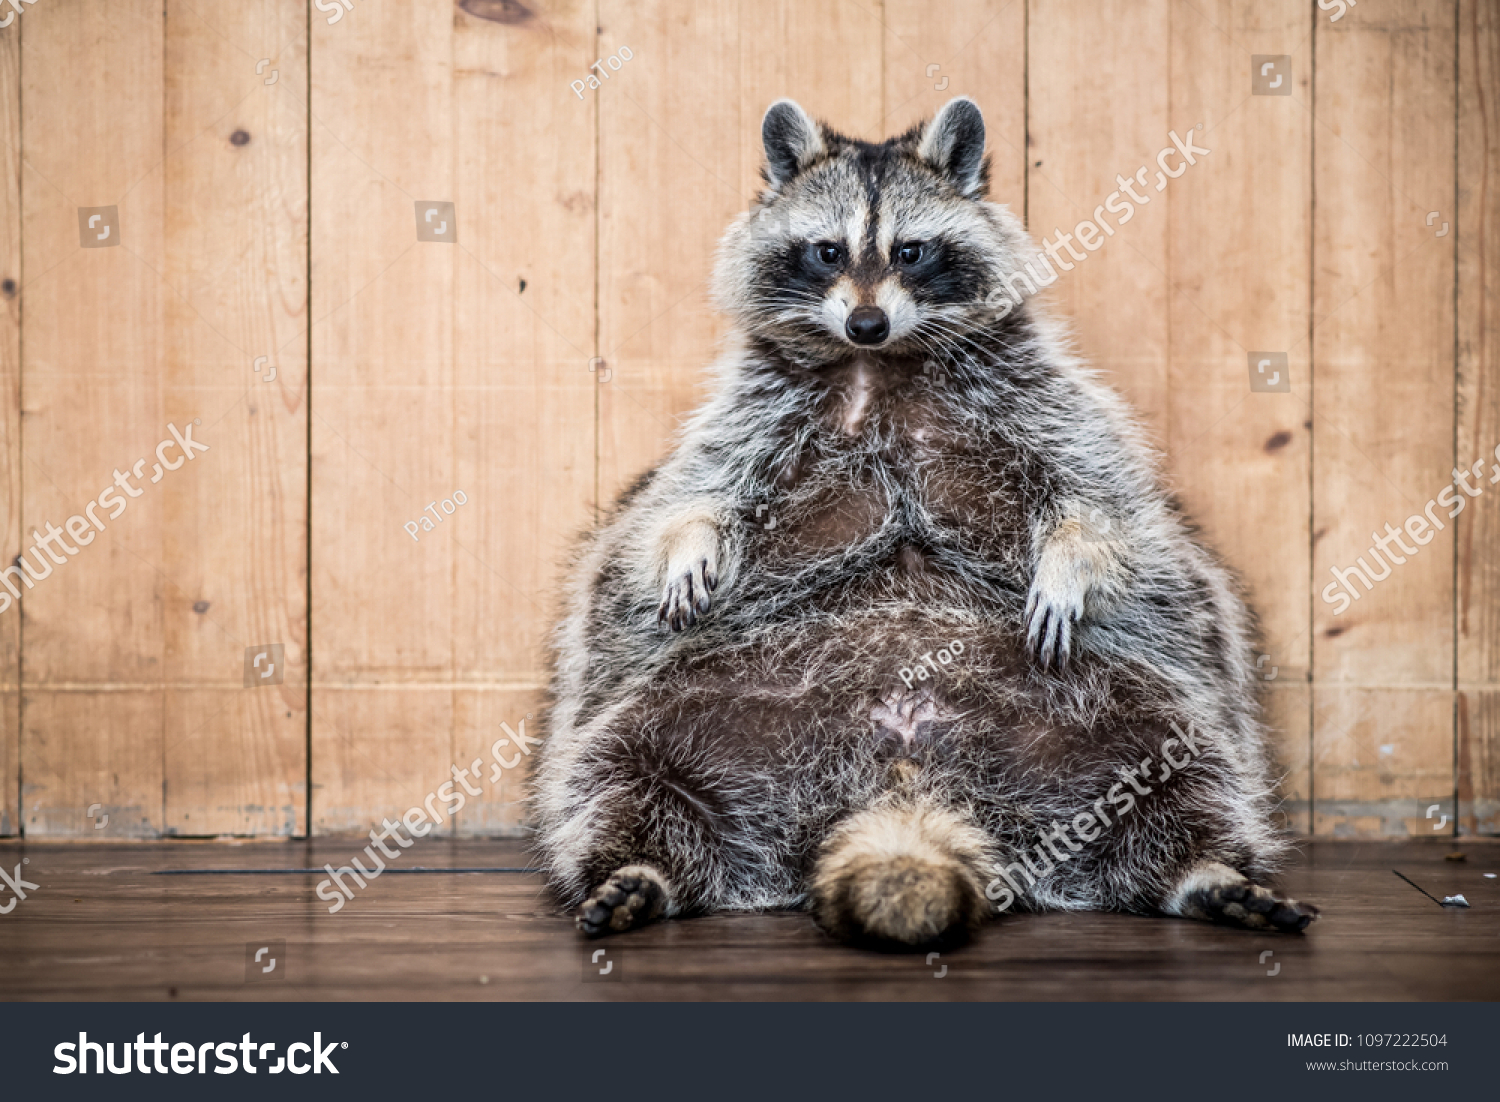 Fat Raccoon Images Stock Photos Vectors Shutterstock